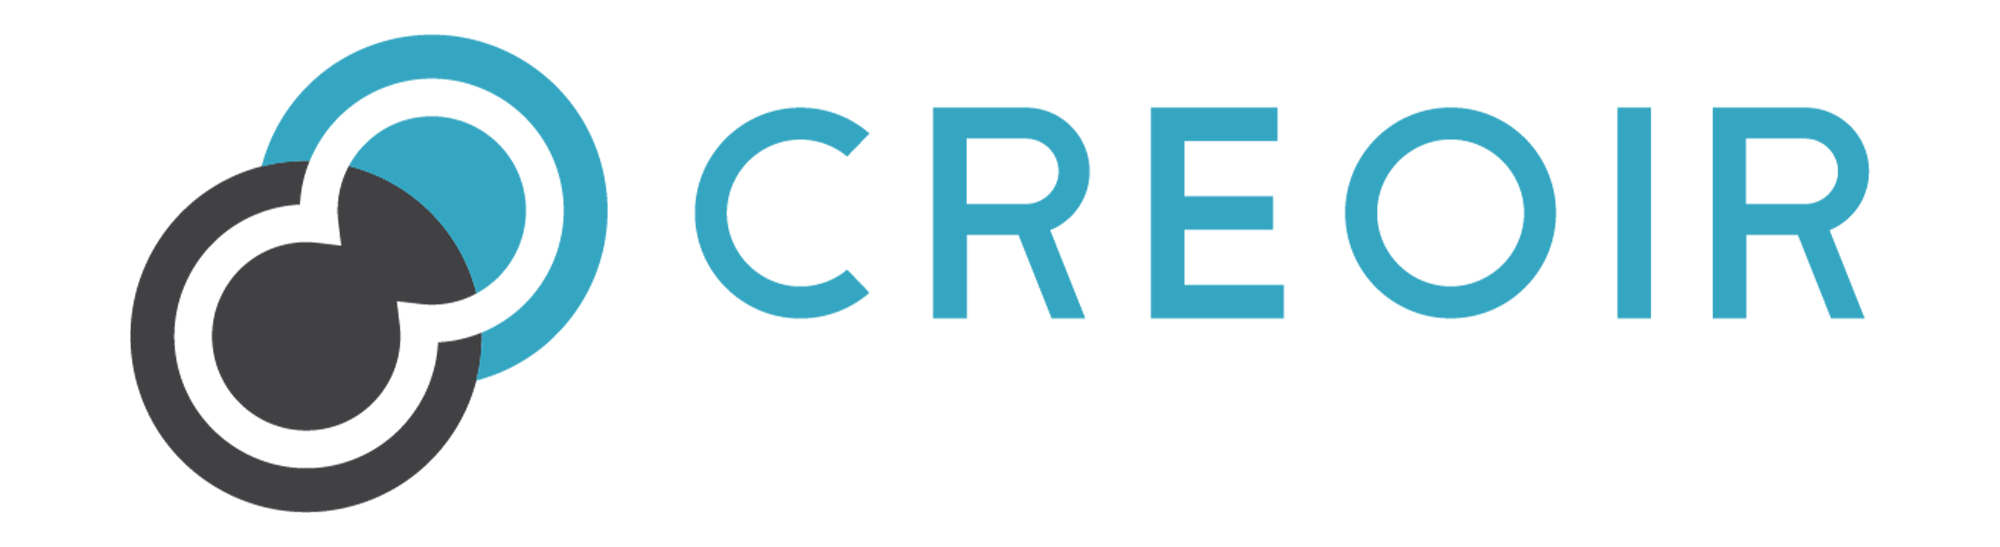 Creoir logo